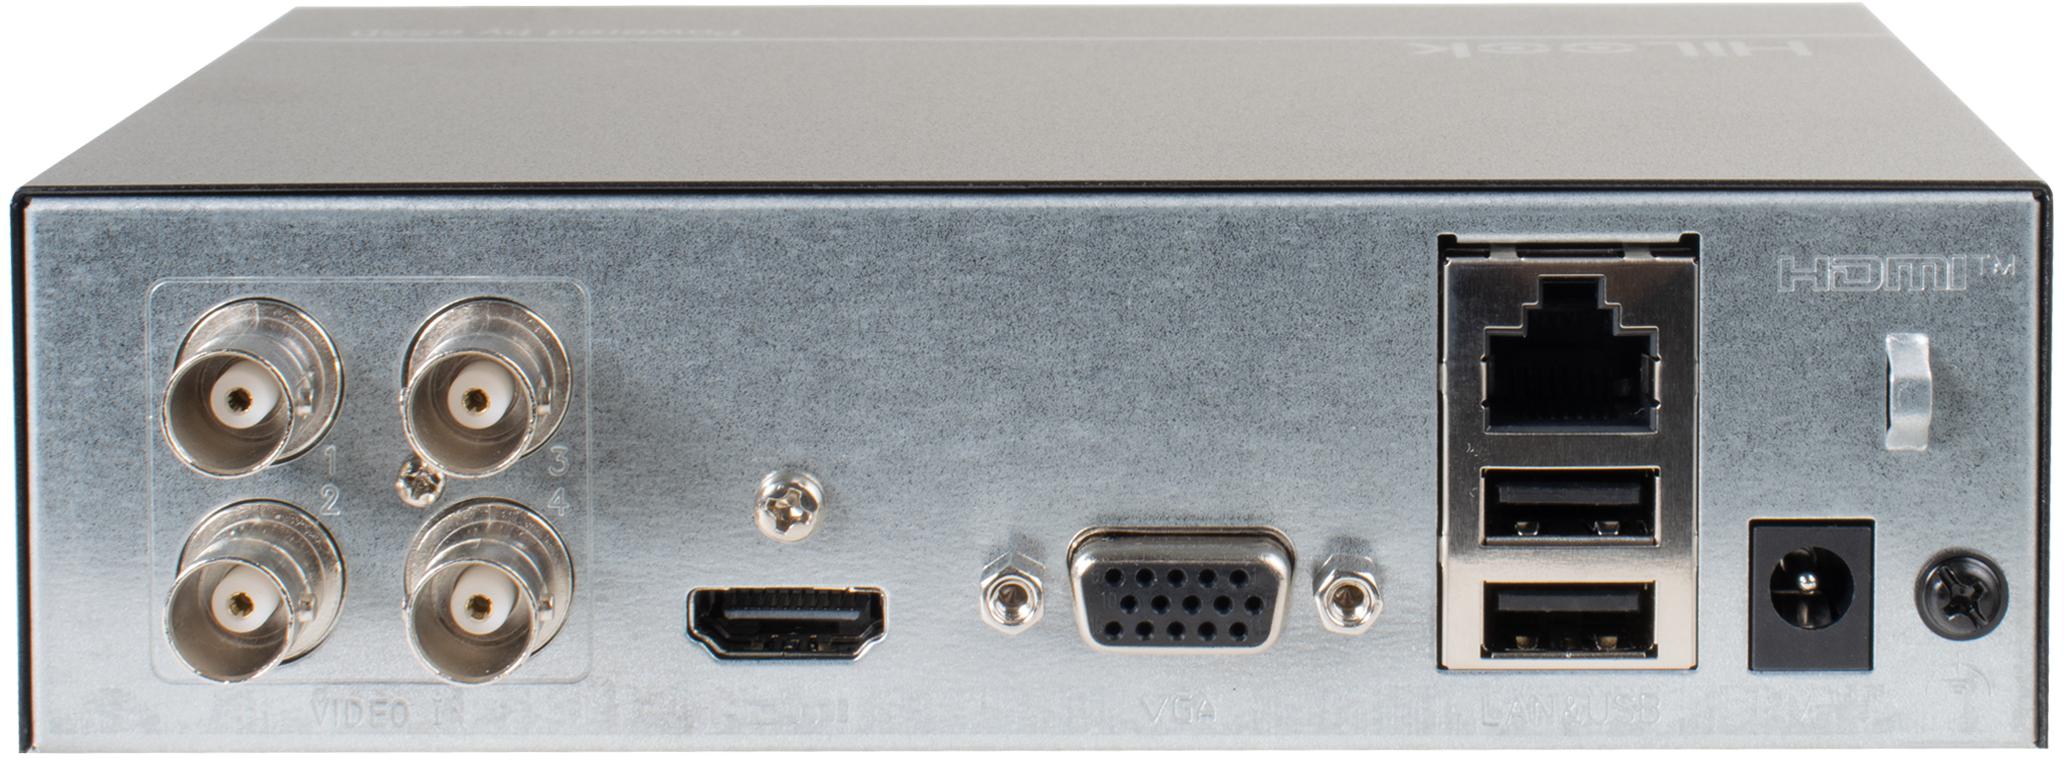 Hilook by Hikvision 2MPx SSD-DVR-2MP - nowoczesny rejestrator 4 kanałowy 4w1 obsługujący standard Onvif